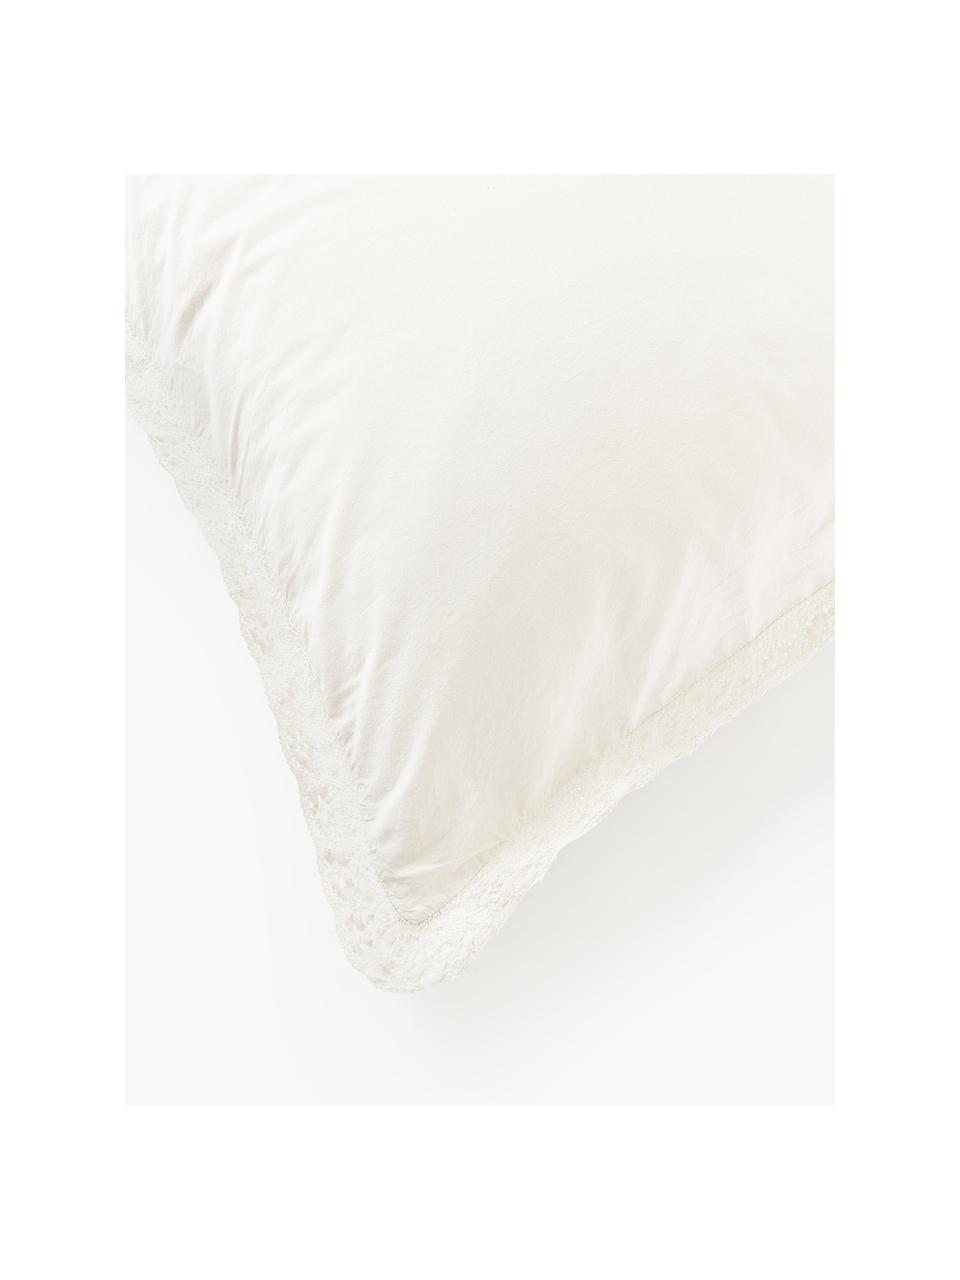 Funda de almohada de algodón con volantes Adoria, Blanco, An 45 x L 110 cm